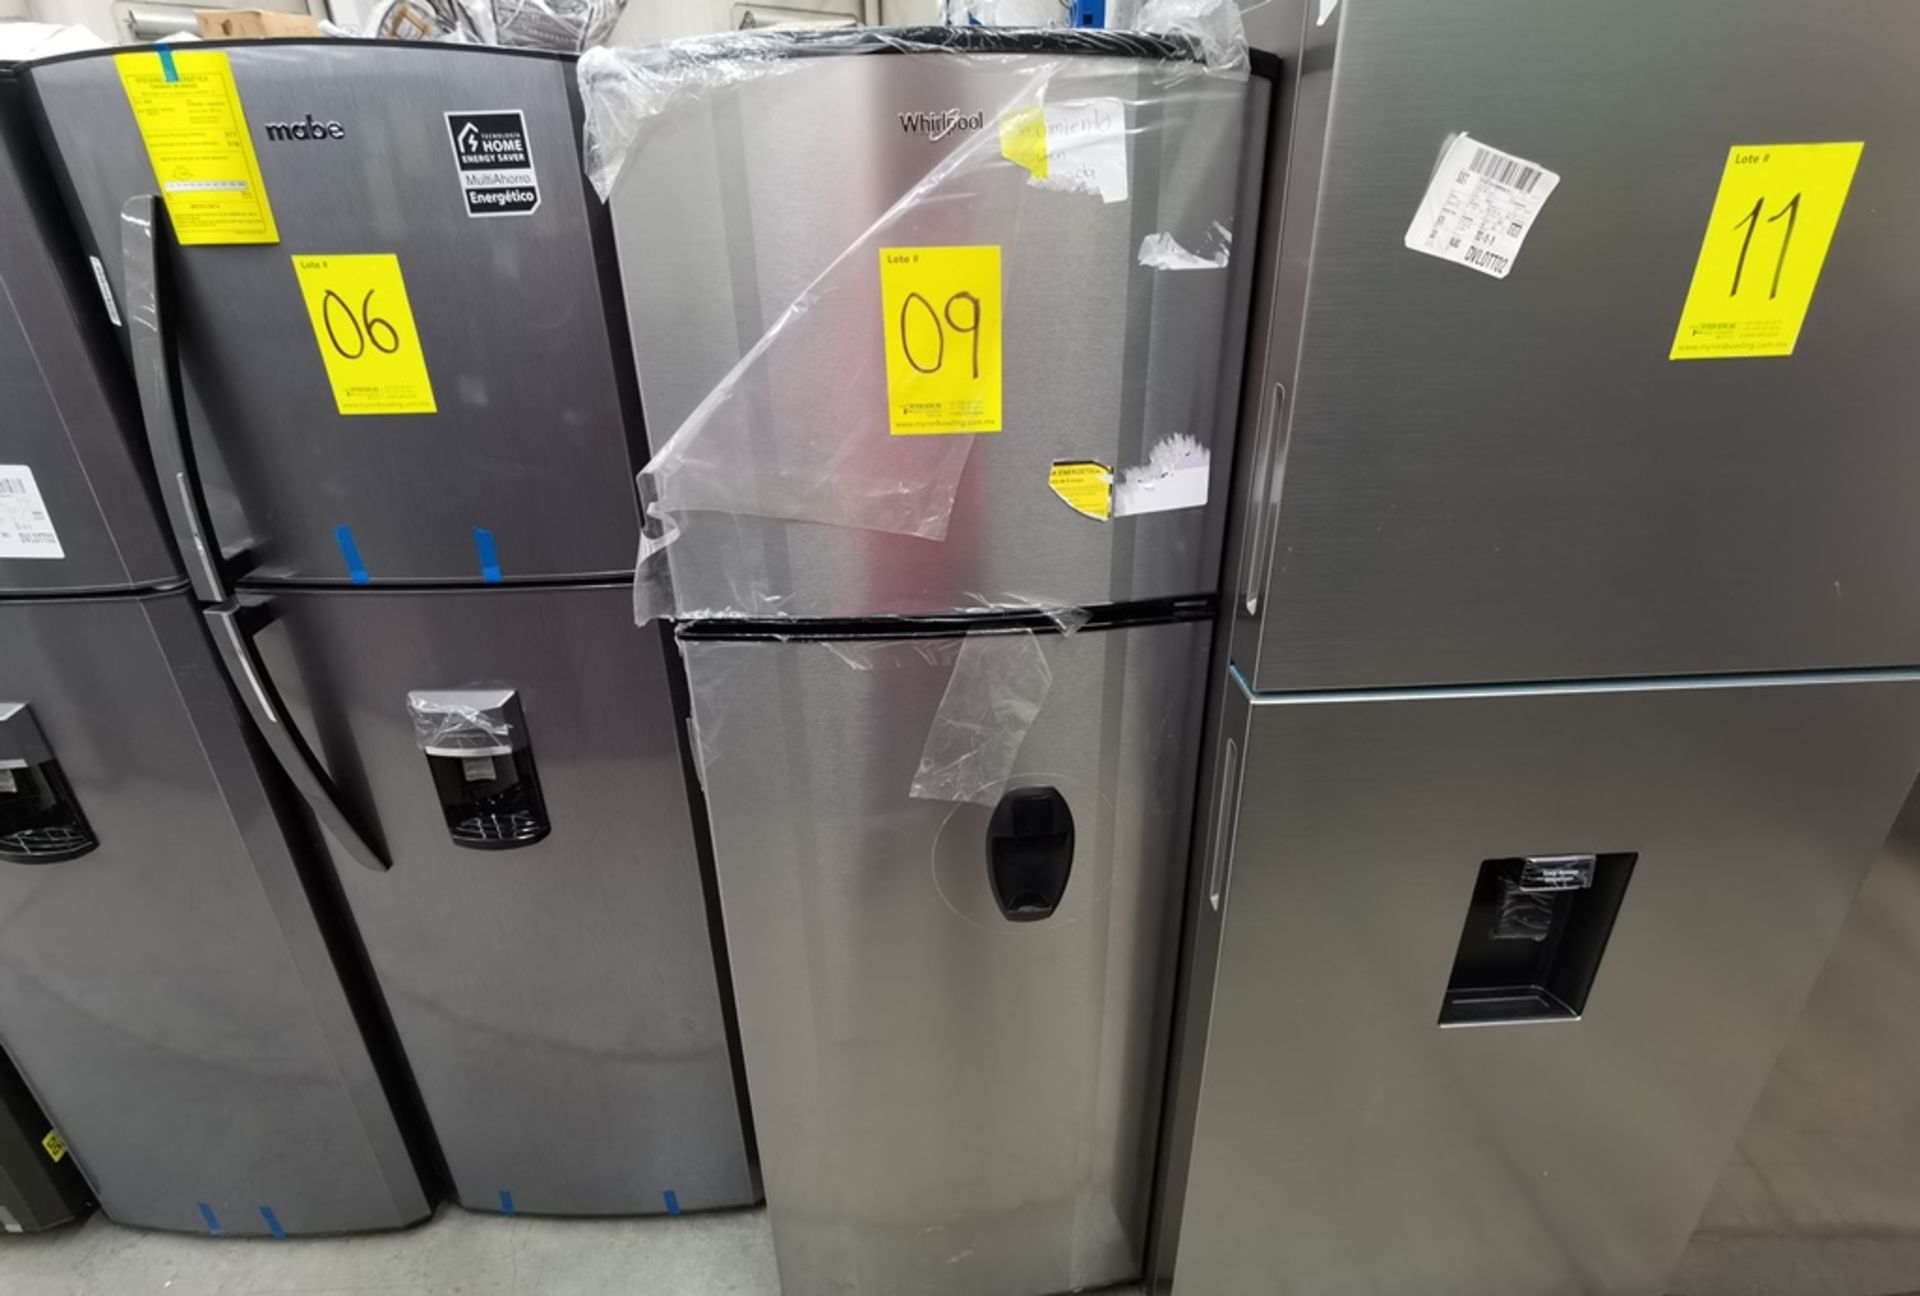 Lote De 2 Refrigeradores Contiene: 1 Refrigerador Marca Across, Modelo AT9007G03, Serie VRB1230980, - Image 7 of 16